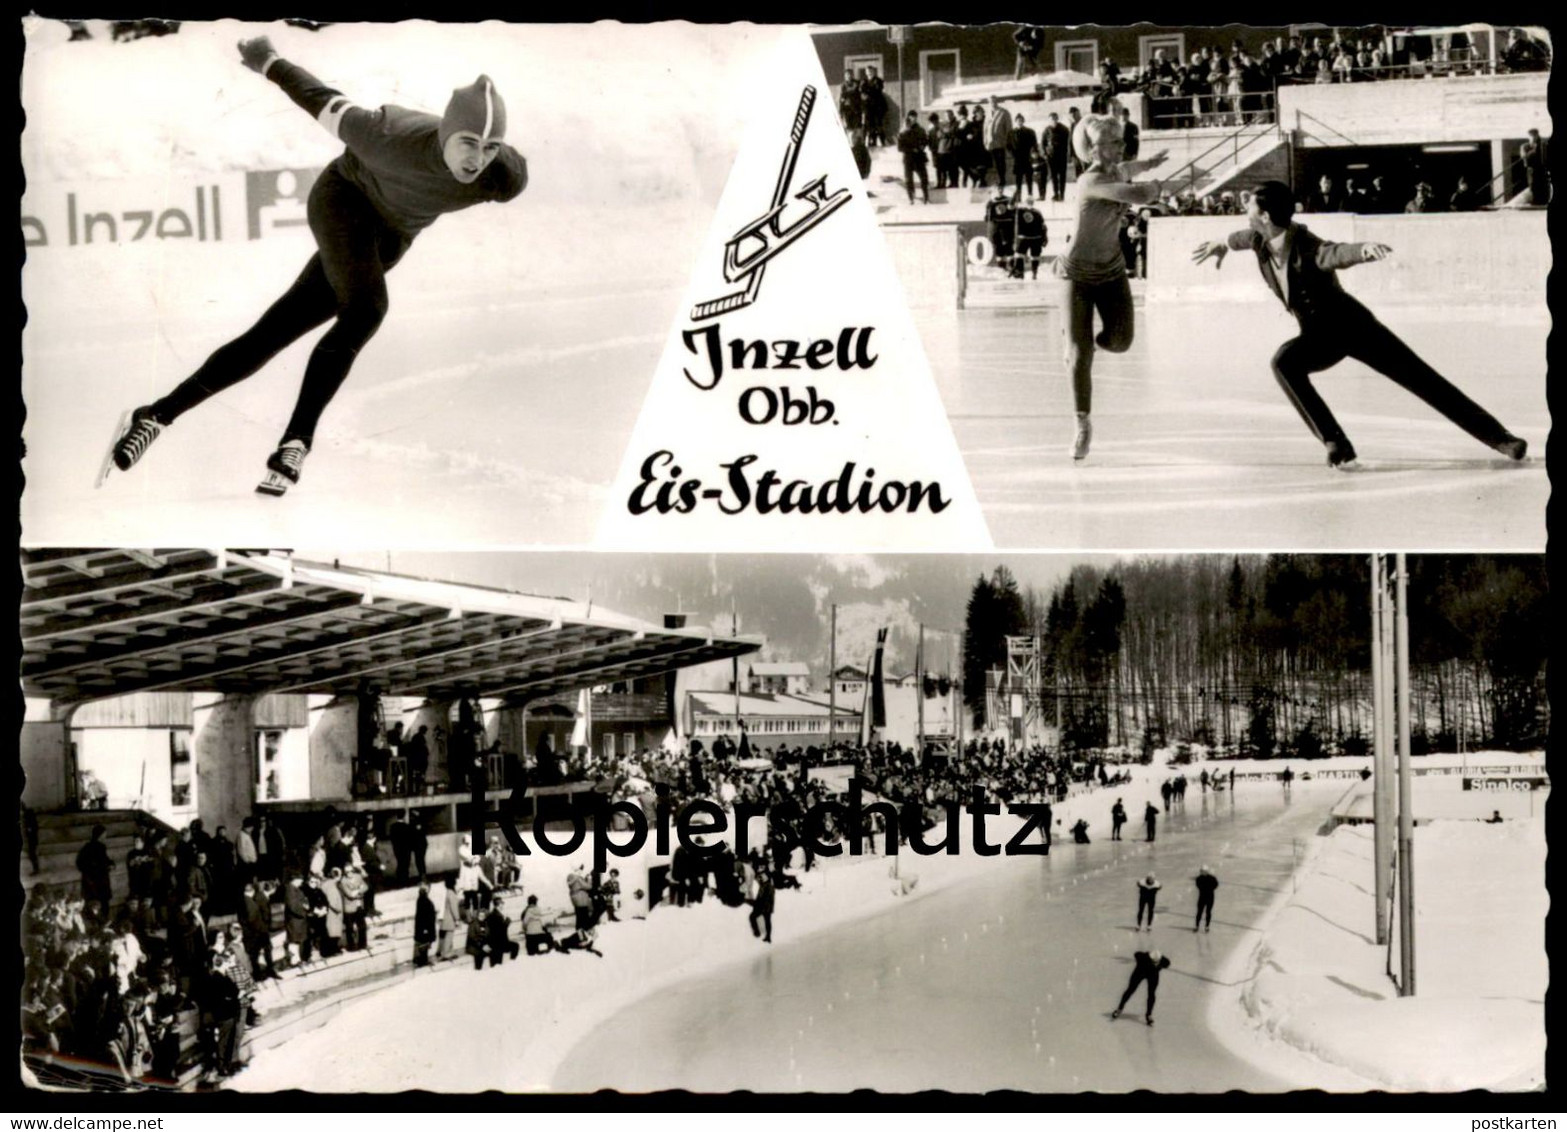 ALTE POSTKARTE INZELL BAYERN EIS-STADION EISSTADION Eislaufen Ice Skating Patinage AK Postcard Ansichtskarte Cpa - Figure Skating